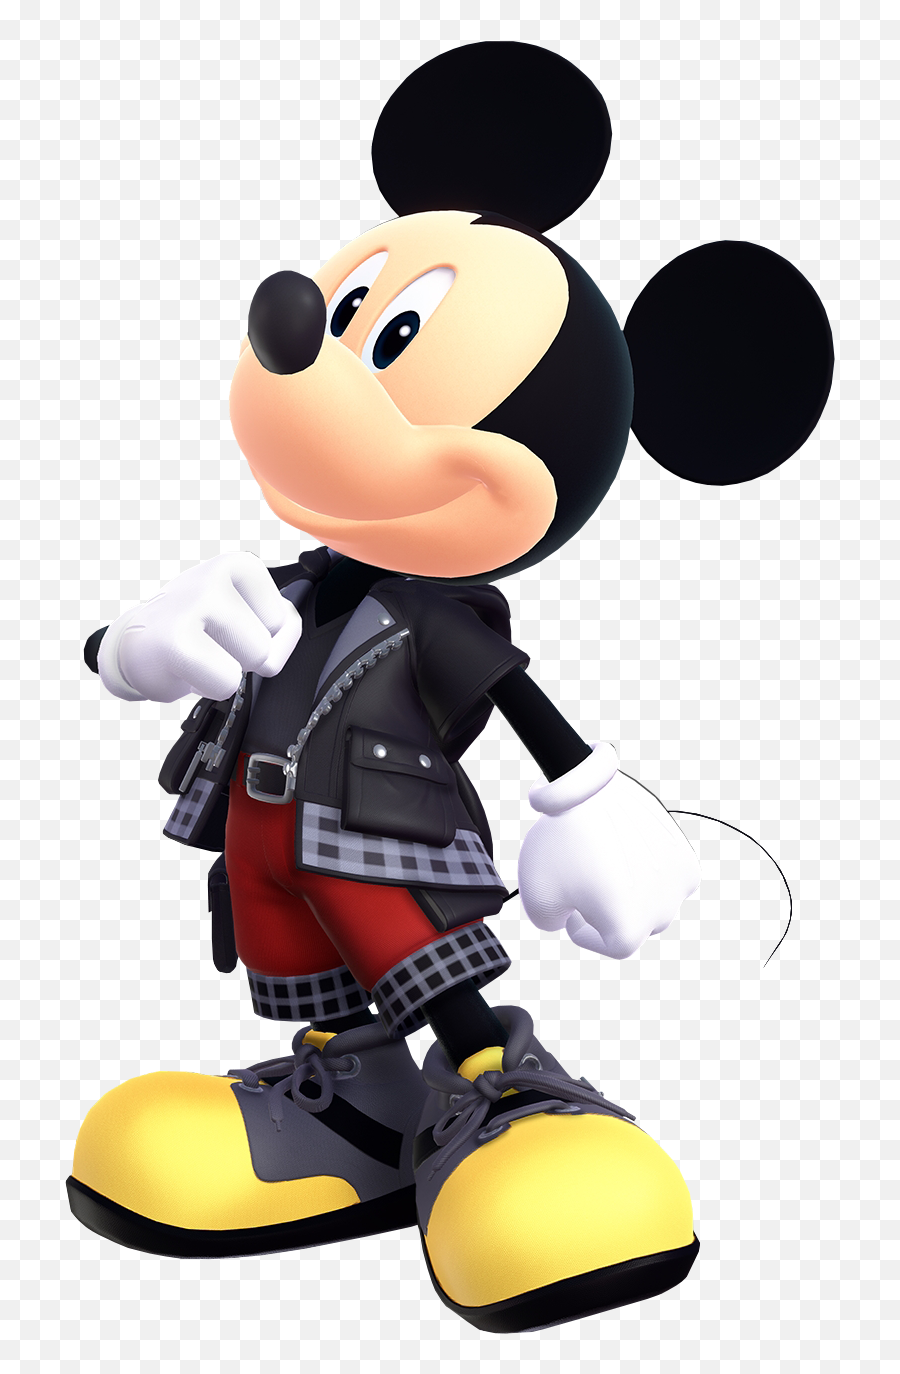 Cute Mickey Mouse Photos Download - 28970 Transparentpng Emoji,Kingdom Hearts Facebook Emoticons